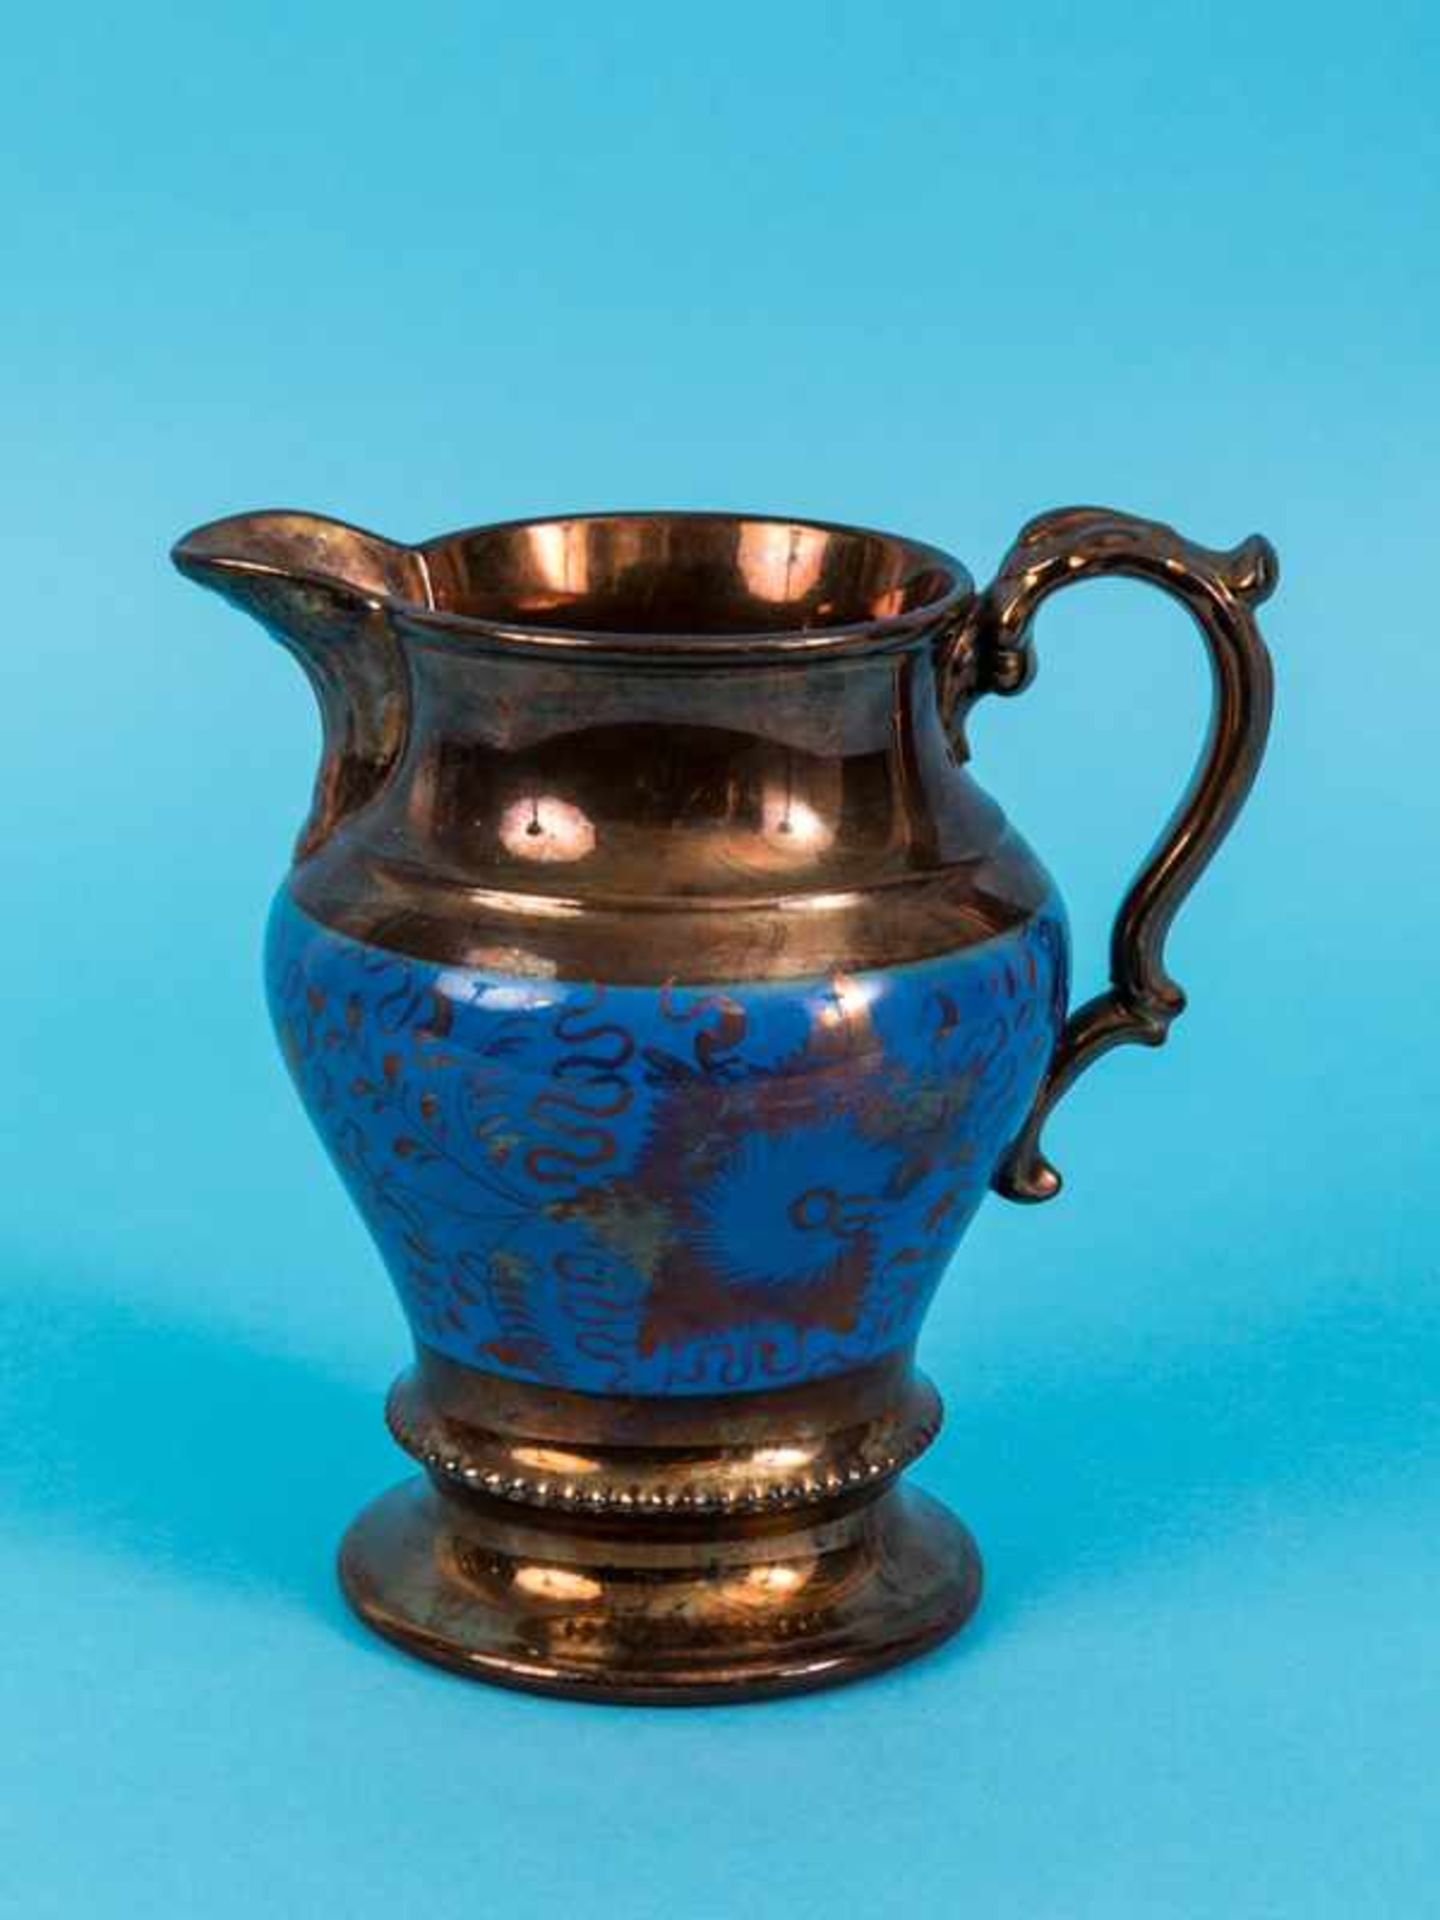 Lüsterkeramik-Krug, England, 2. Hälfte 19. Jh. Steingut mit kupferfarbiger und blauer Lüster-Glasur;